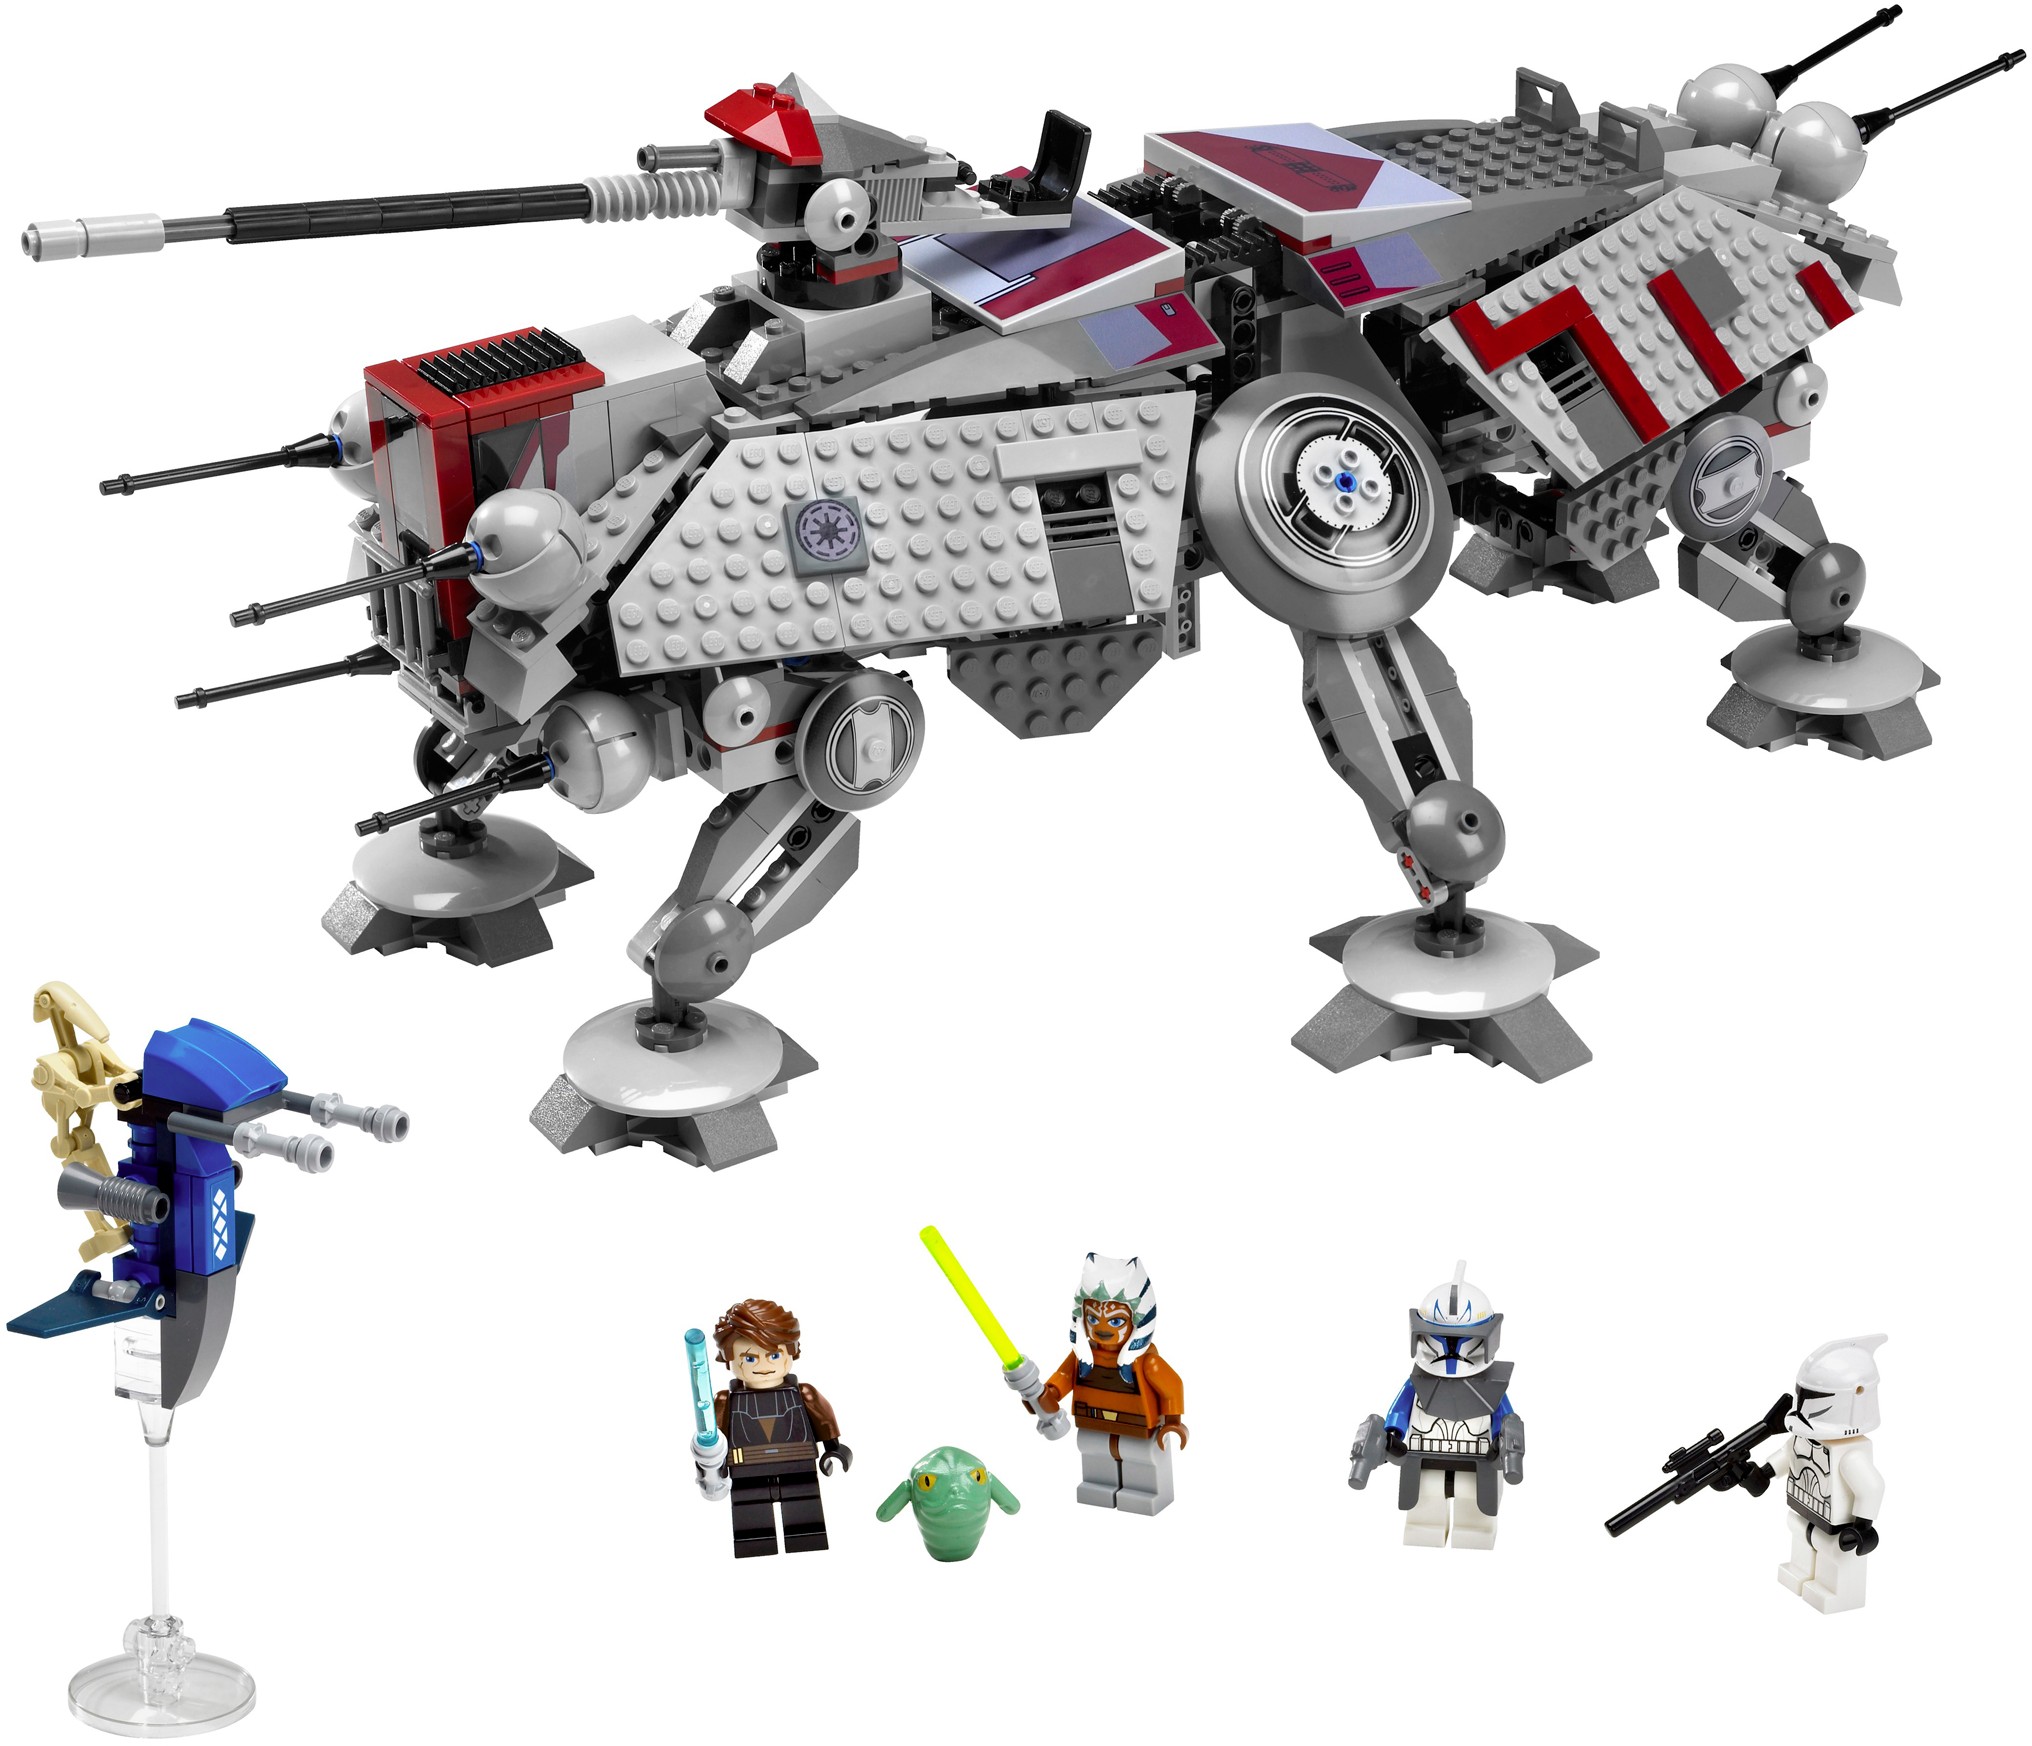 Lego® Star Wars™ Figur Anakin Skywalker sw183 Clone Wars aus 7669 8037 7675 